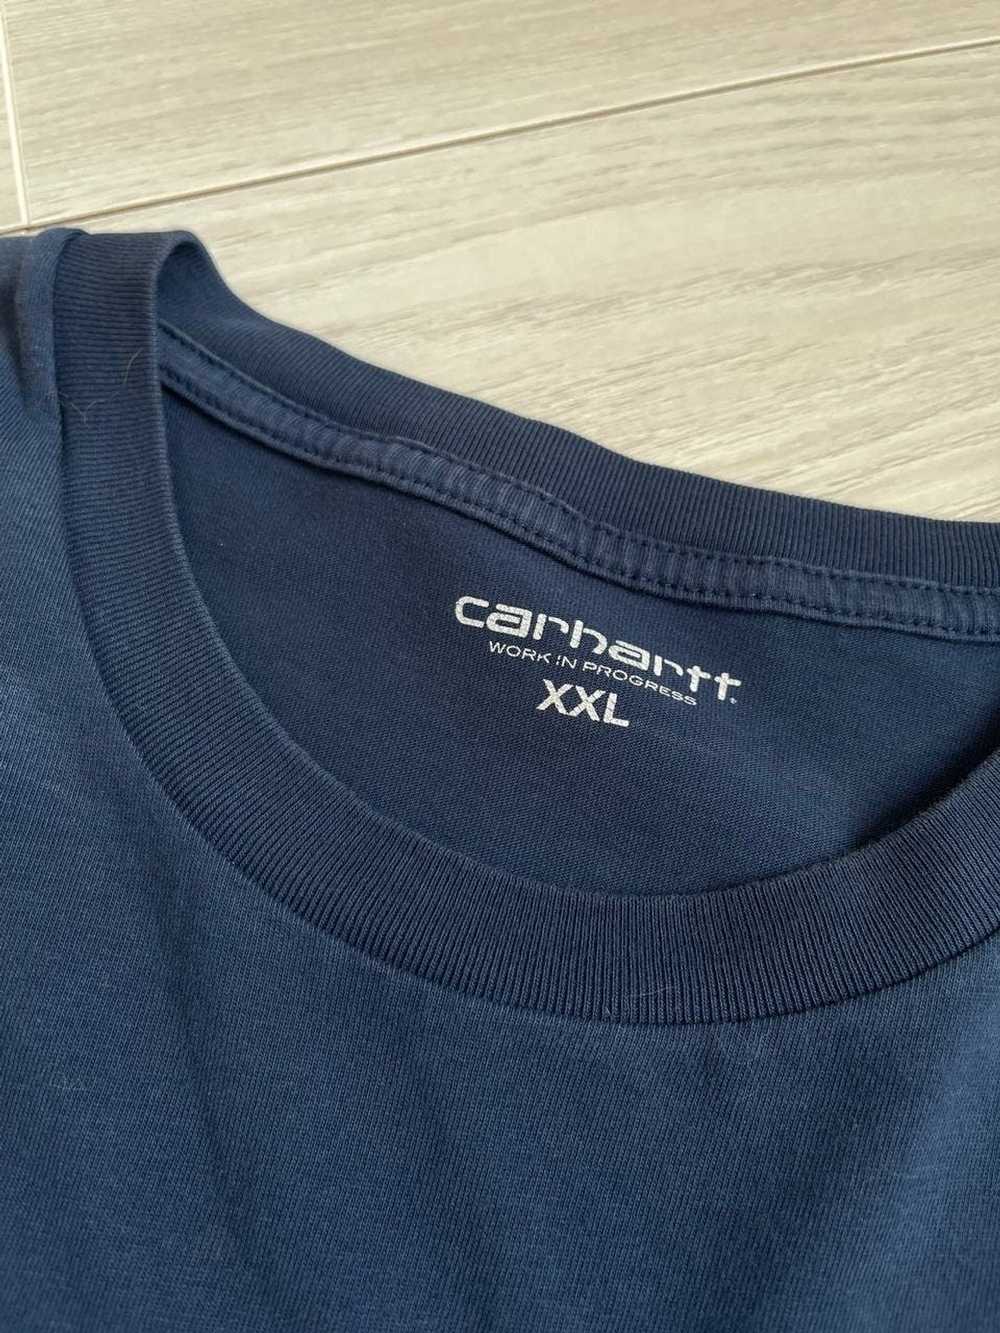 Carhartt Wip Carhartt WIP T shirt - image 5